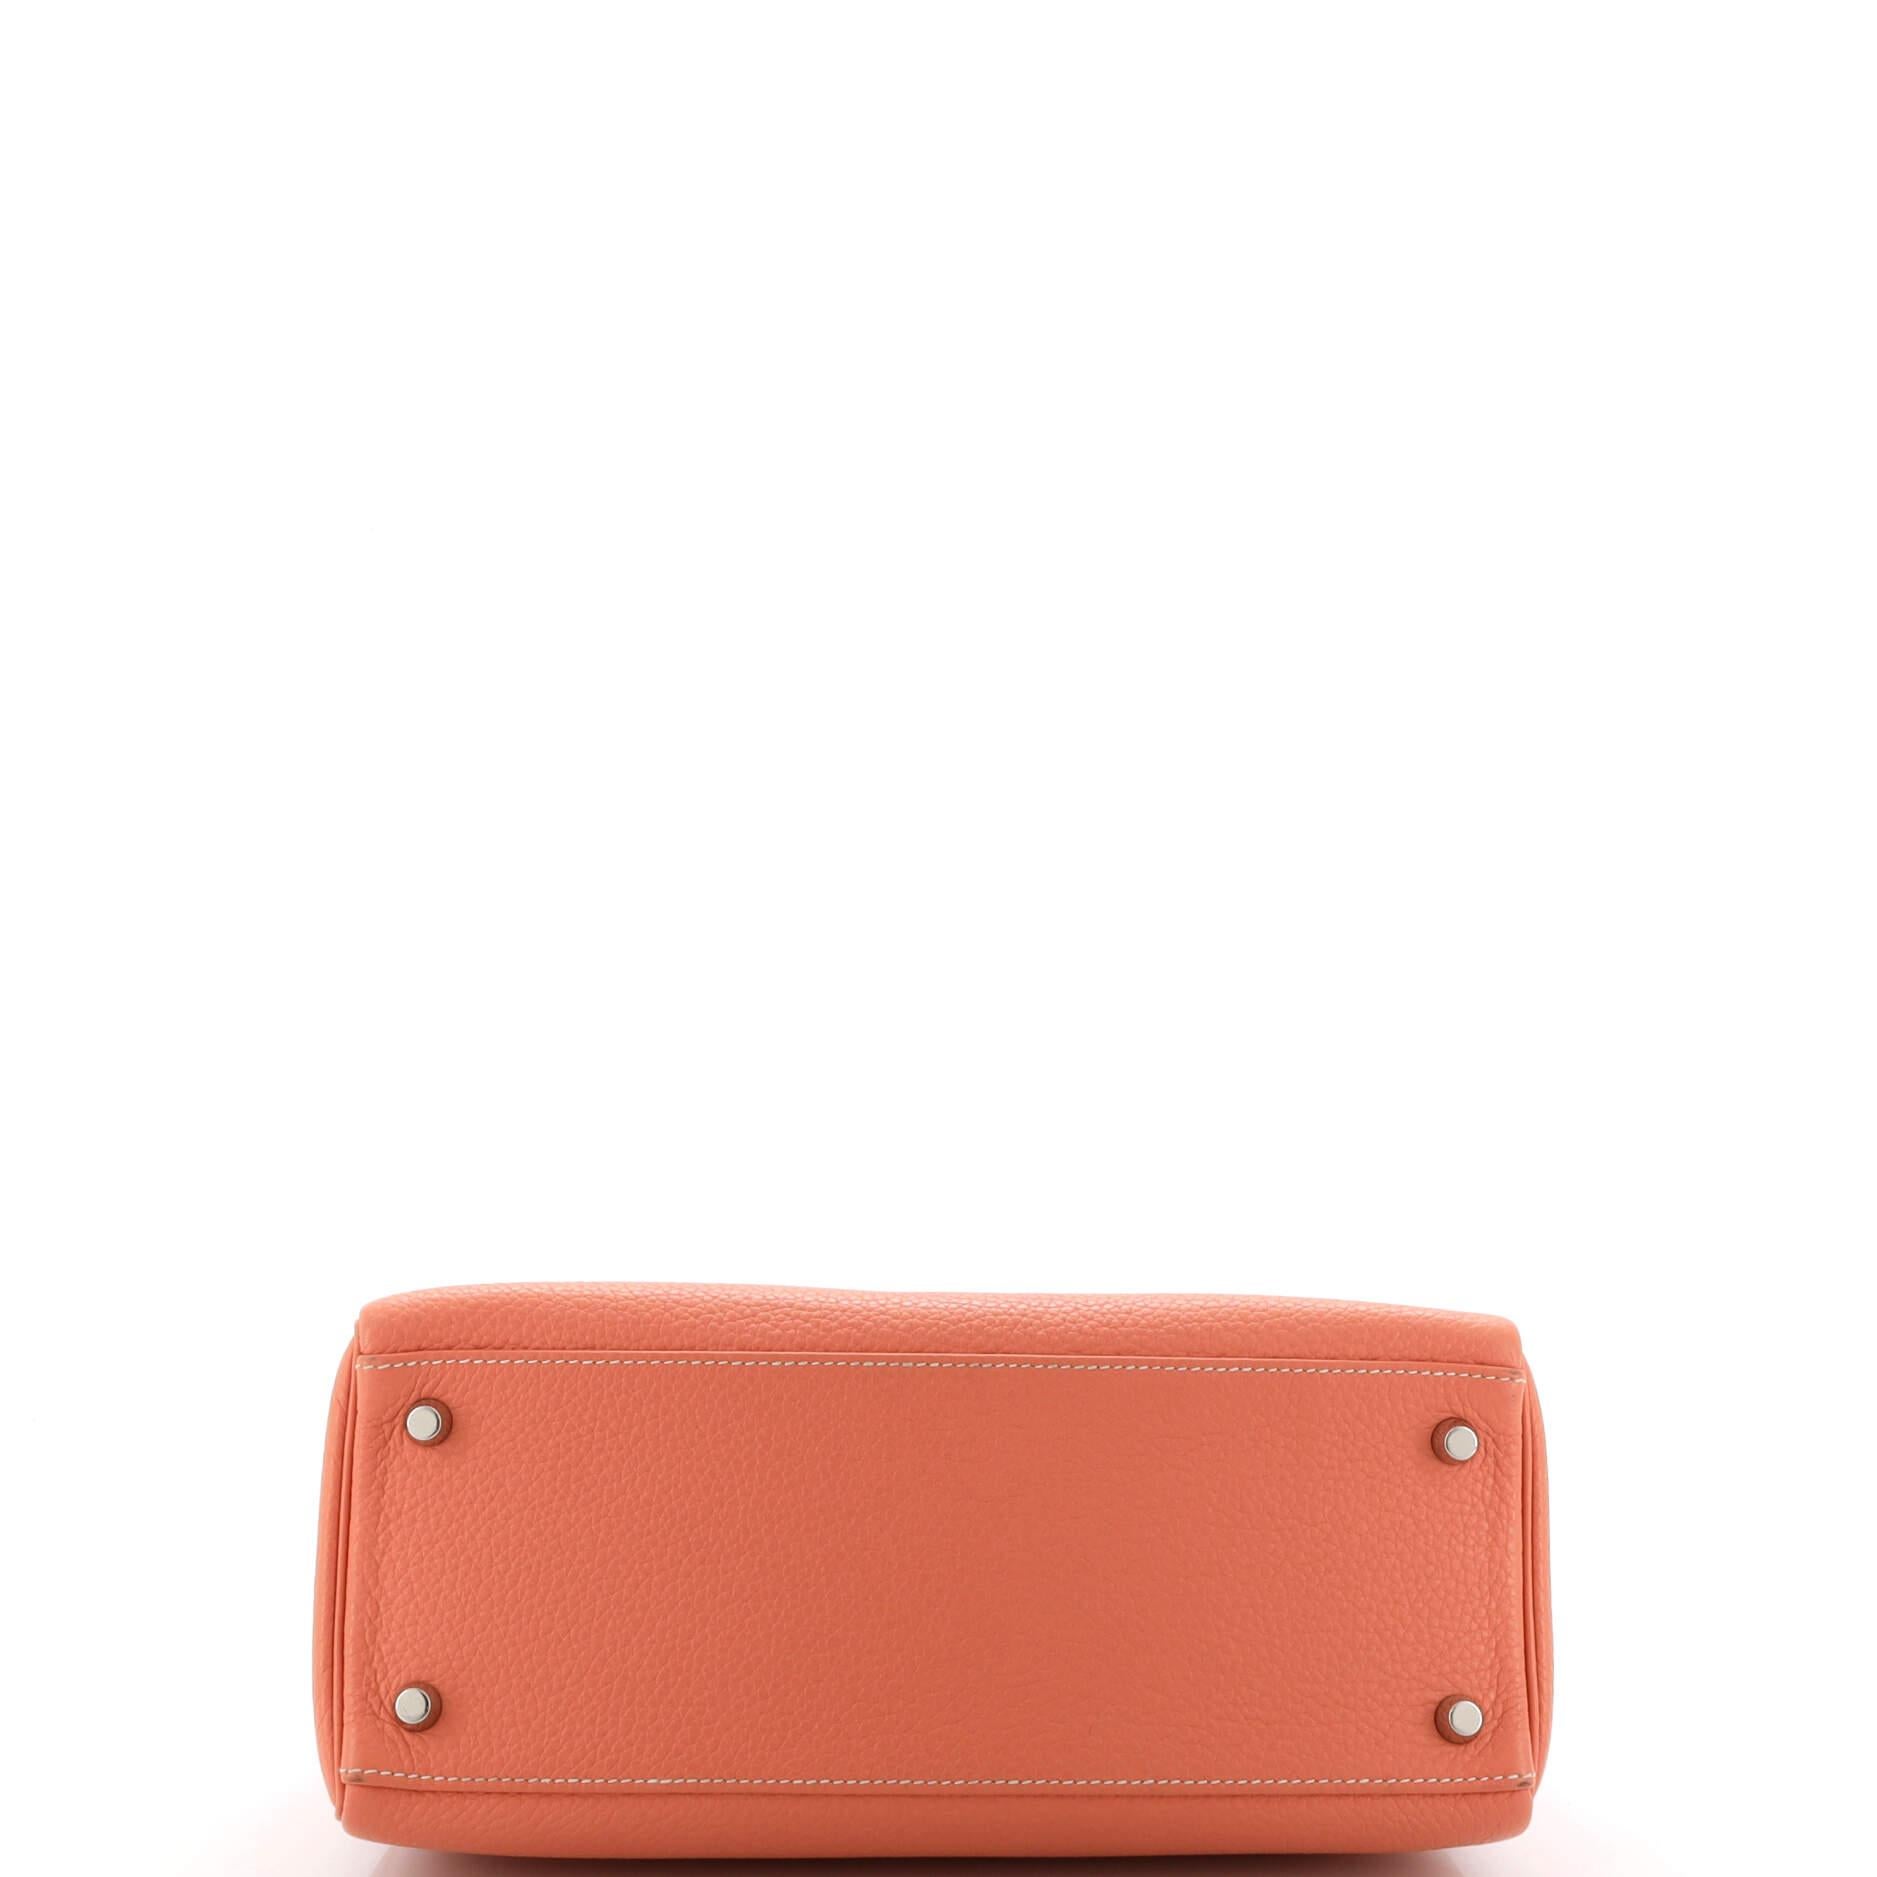 Women's Hermes Kelly Handbag Crevette Clemence with Palladium Hardware 28